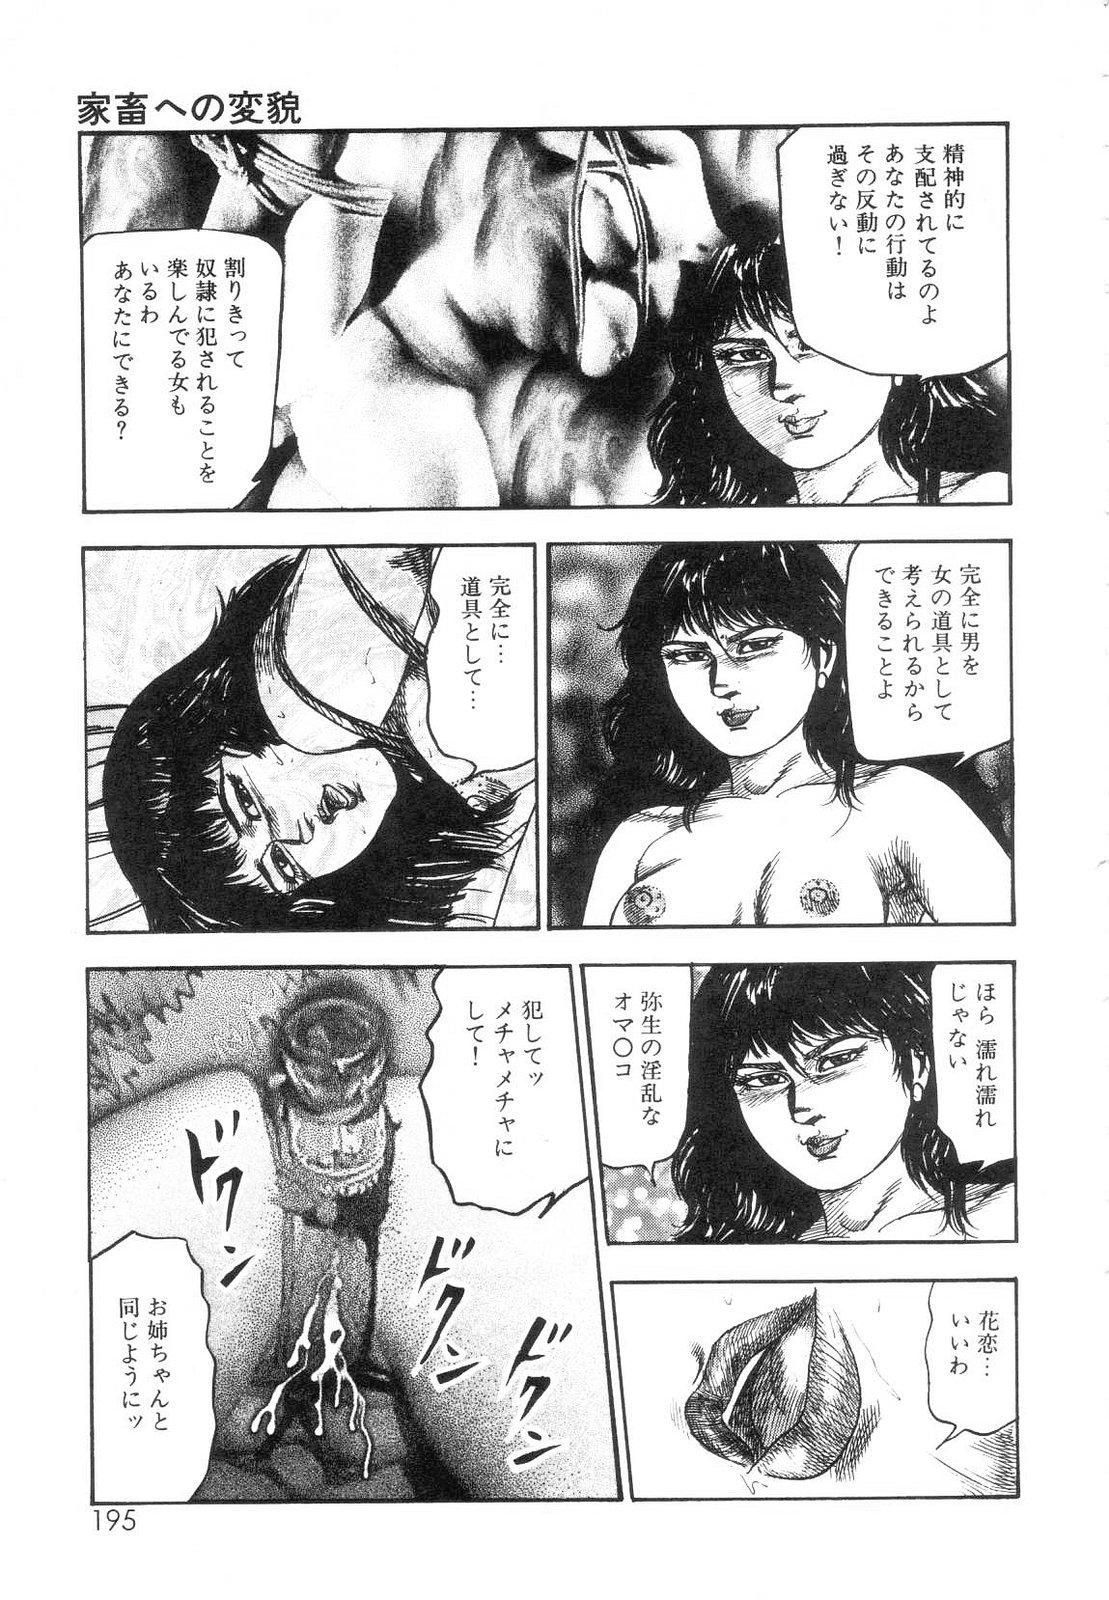 Shiro no Mokushiroku Vol. 7 - Shiiku Ningyou Erika no Shou 196